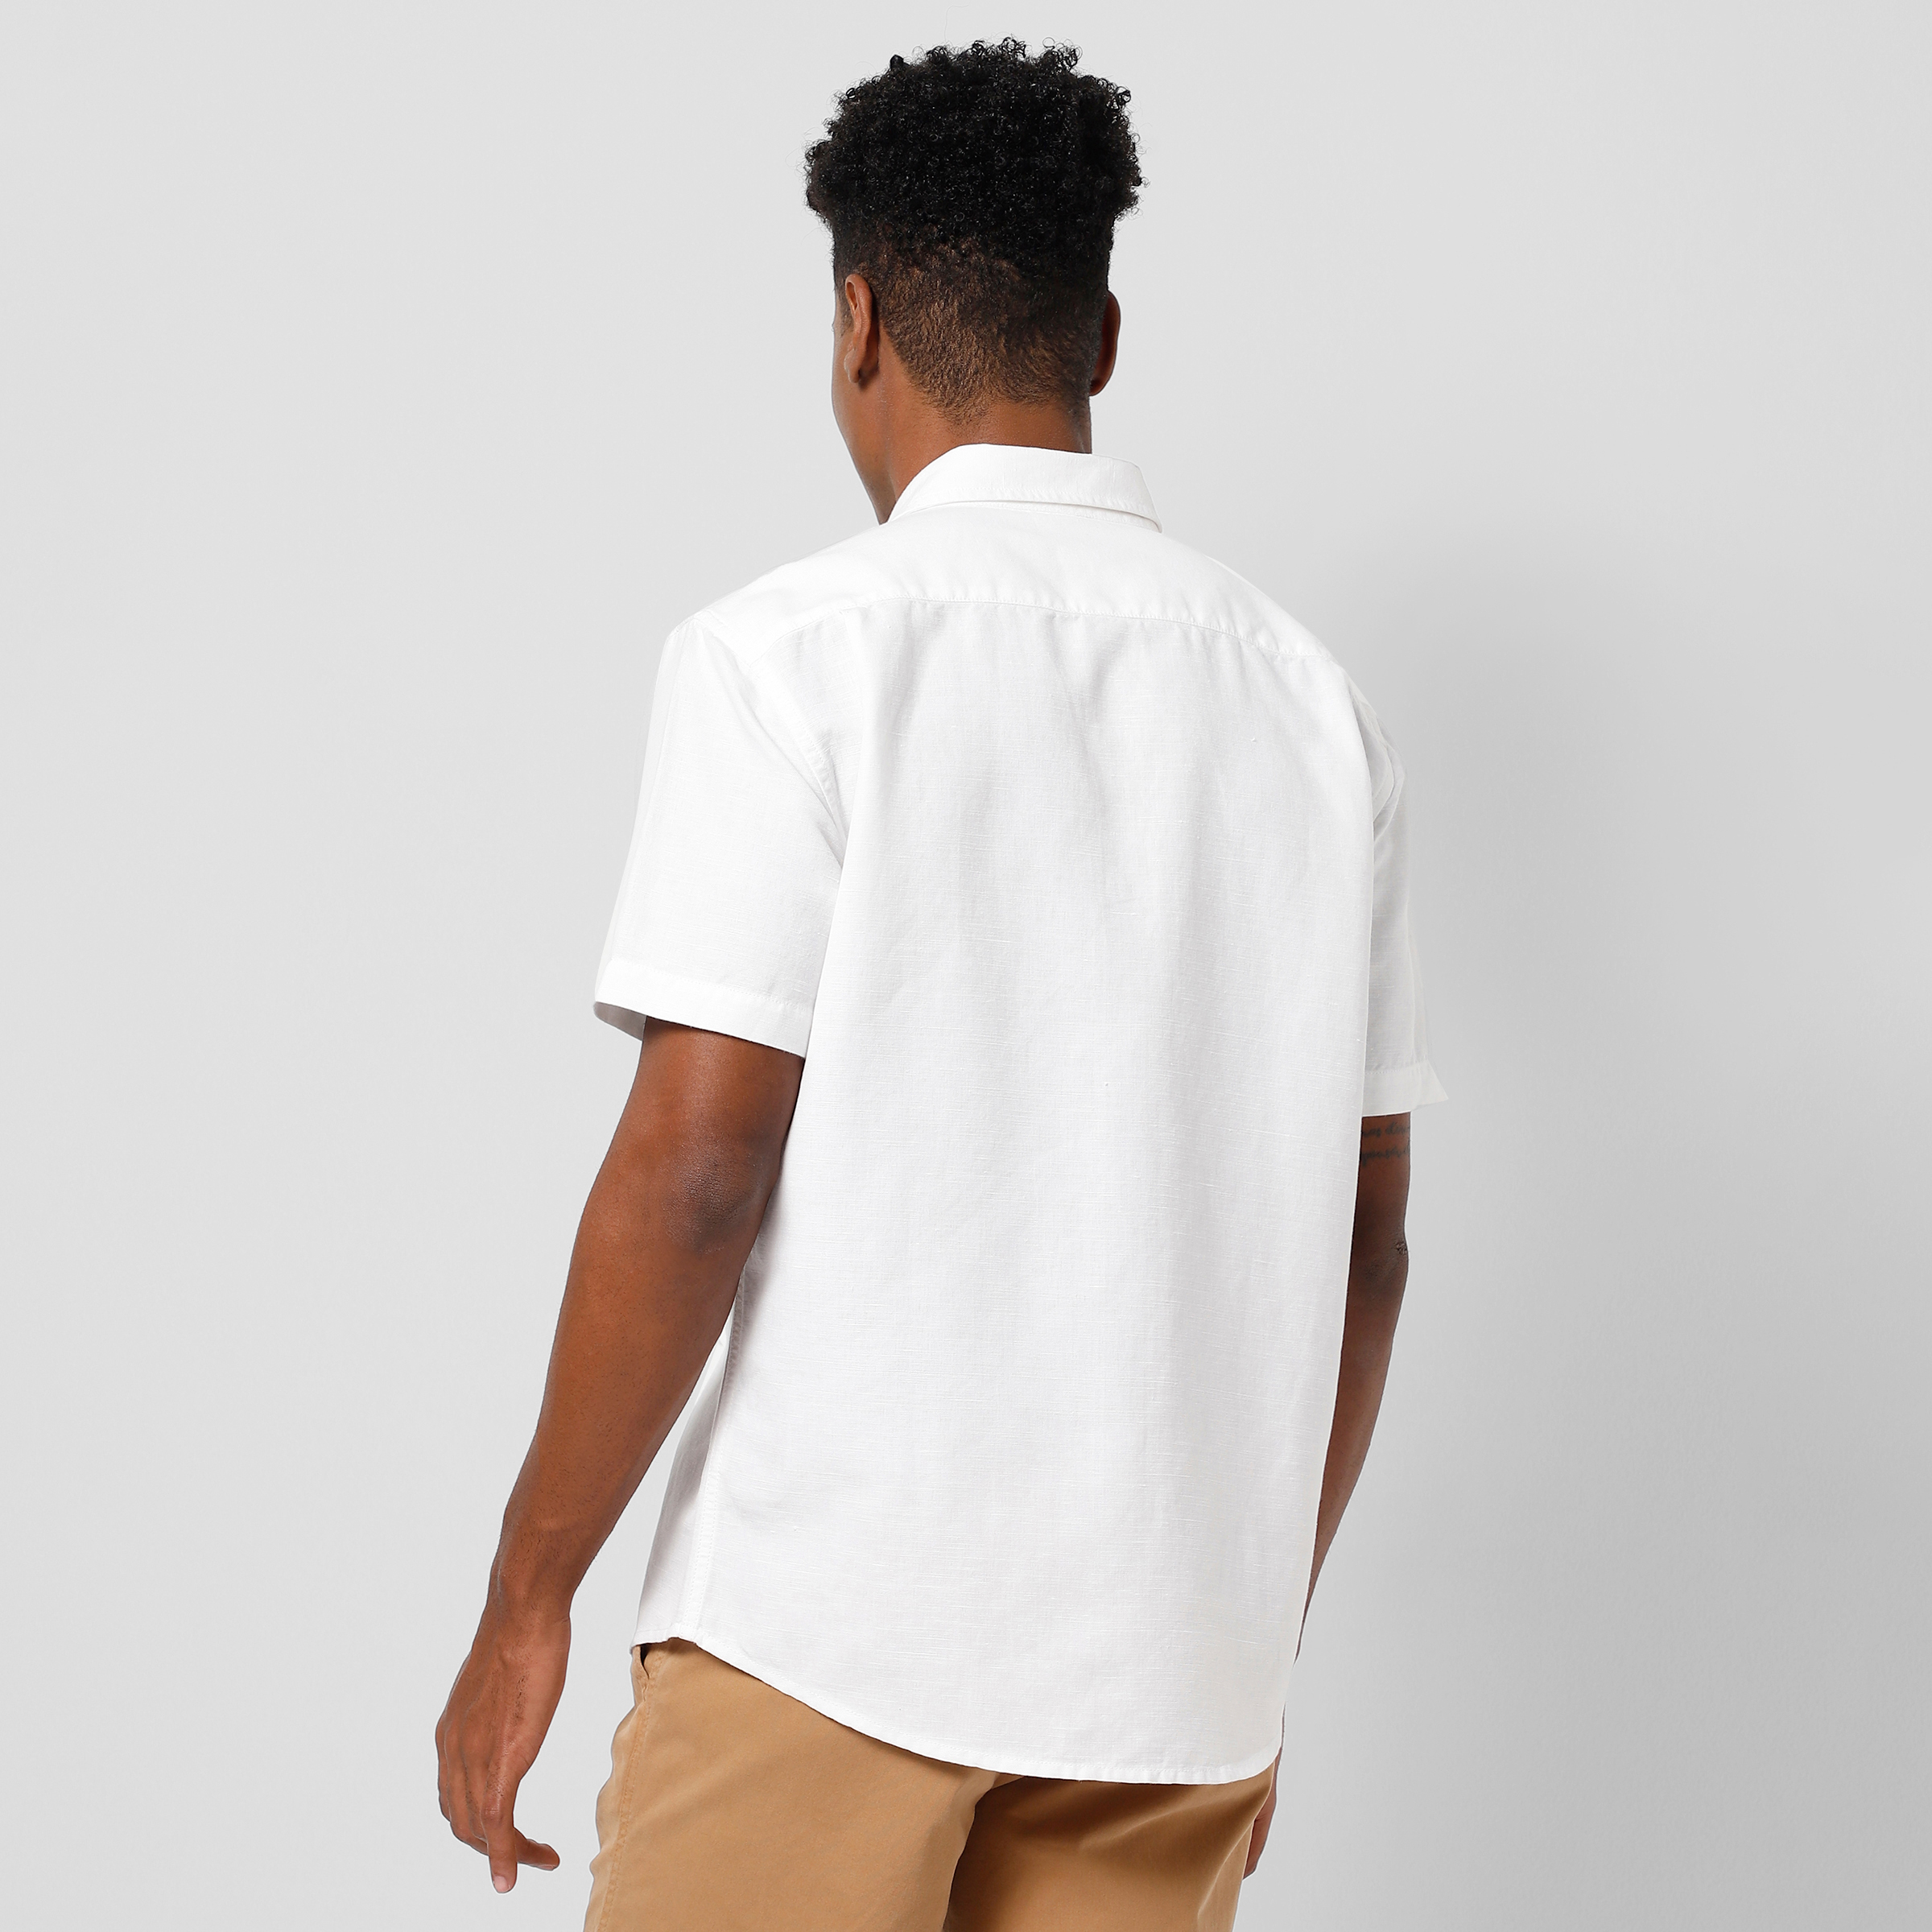 Retreat Linen Shirt White back on model